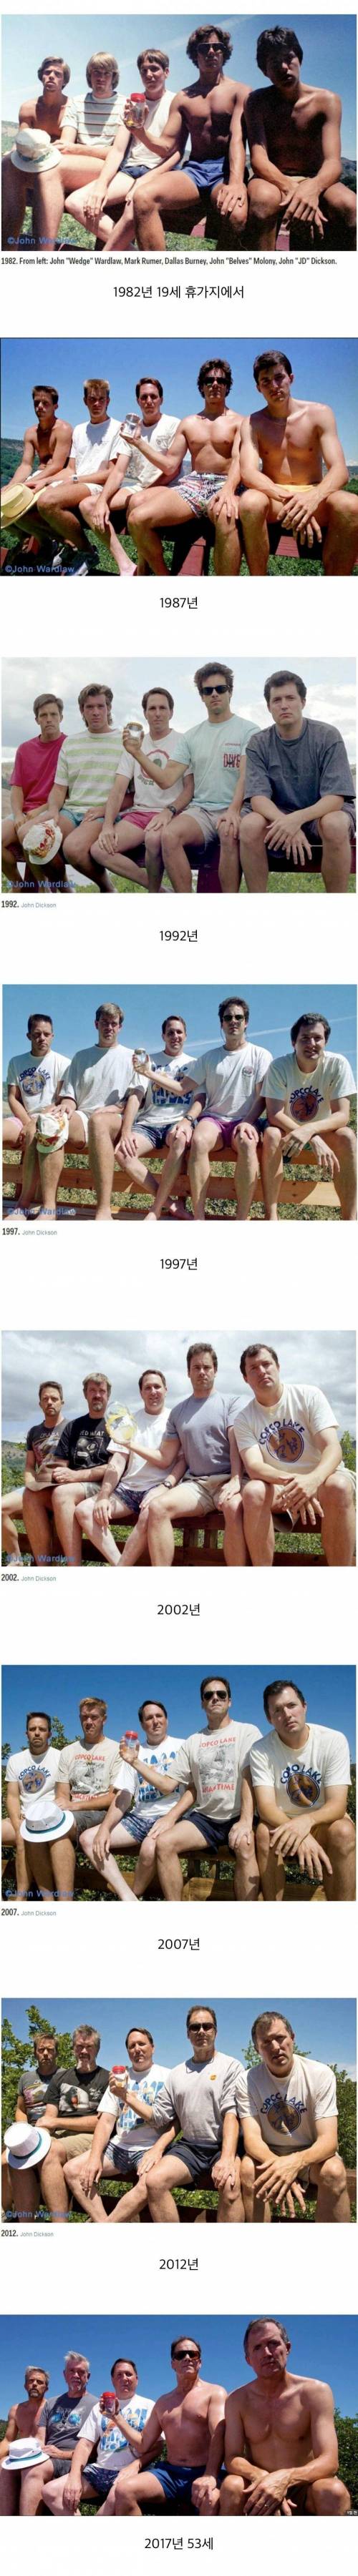 5 다섯 친구가 5년마다 35년간 찍은 사진.jpg